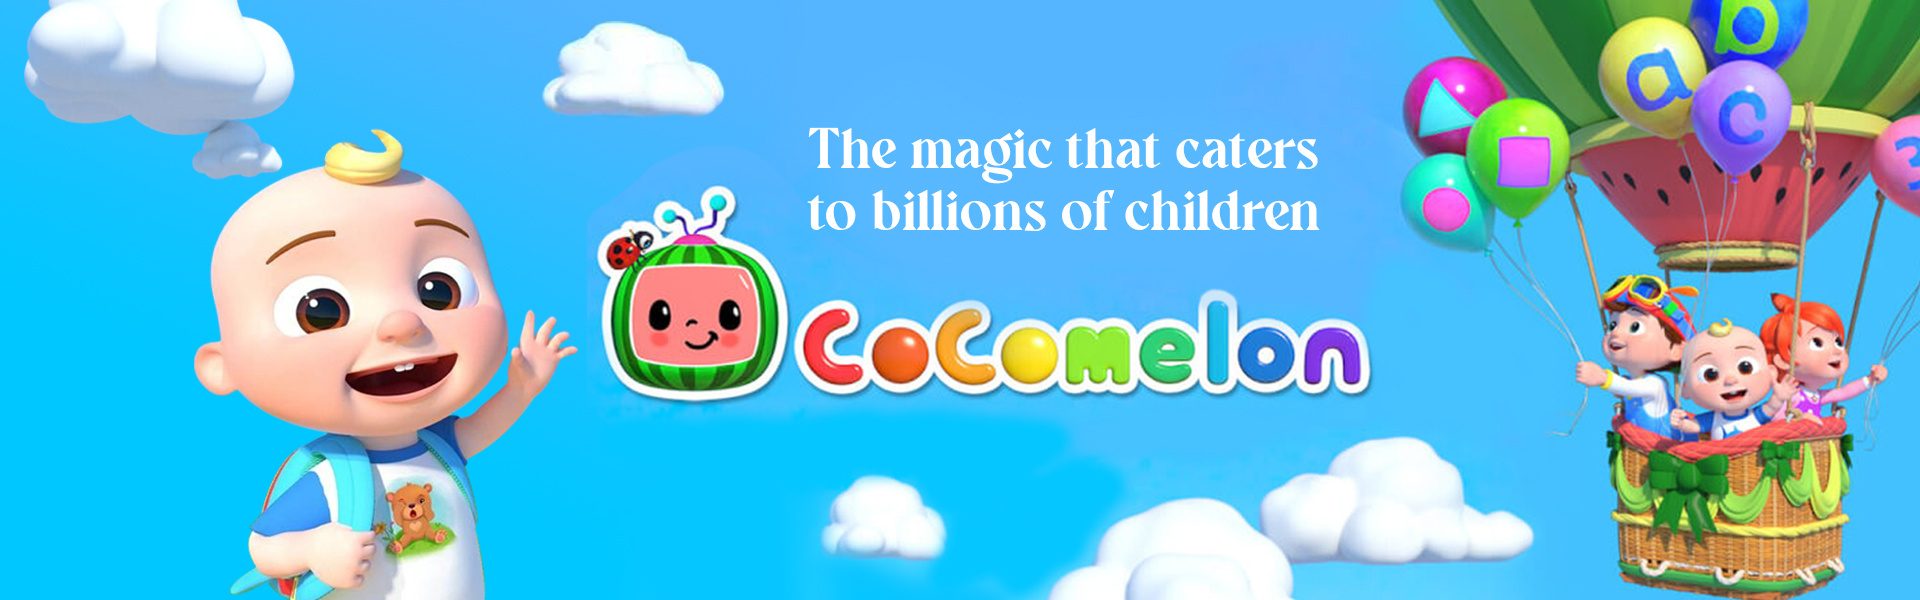 Kids' Channel Cocomelon, Which Brings 3+ Billion Views Per